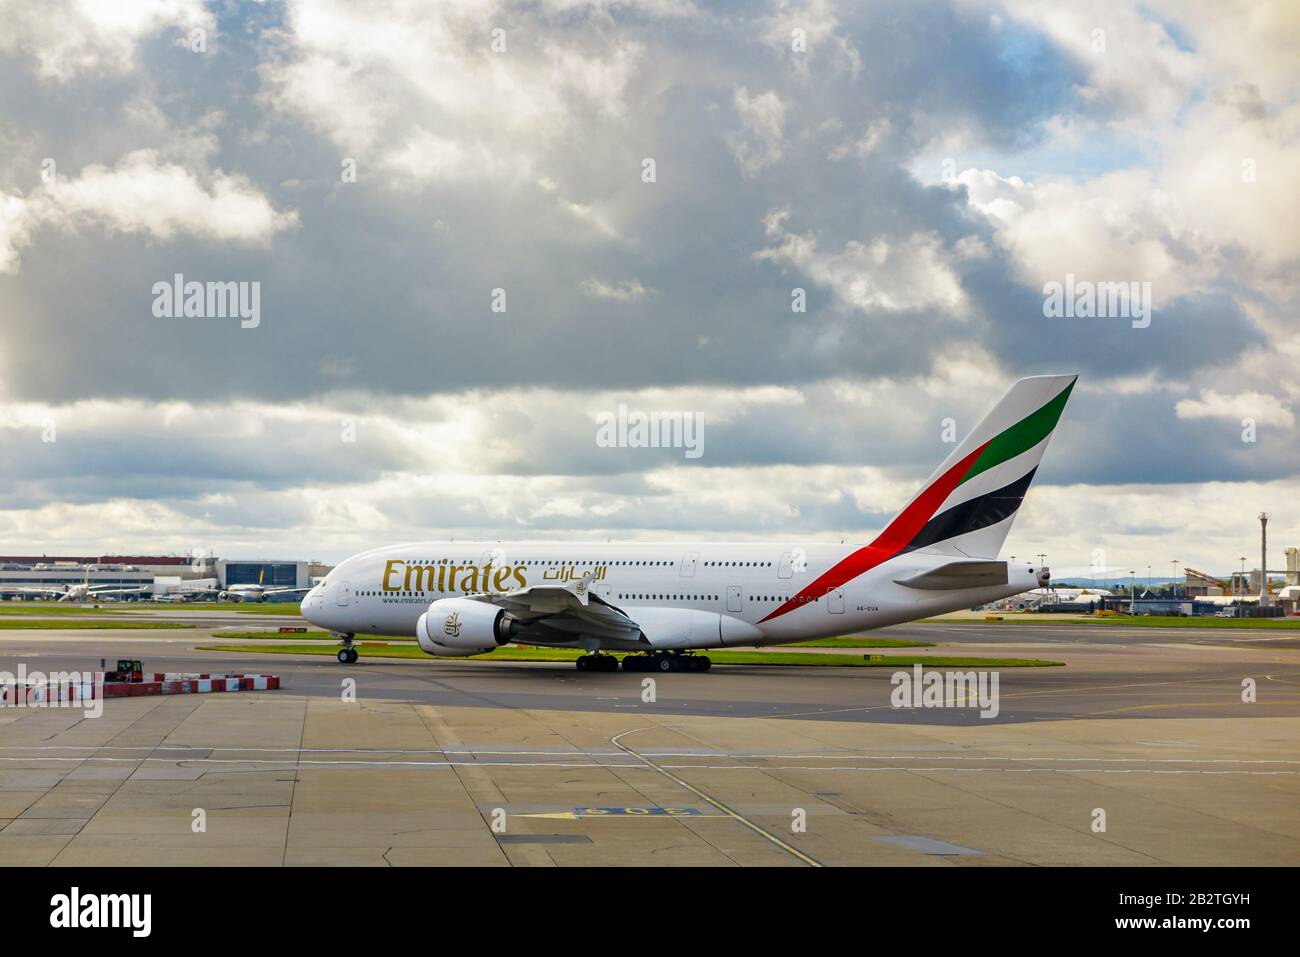 Emirates Airbus A 380-861 en privilège d'entreprise debout sur la piste de l'aéroport Heathrow de Londres sur la piste en attente de décollage sous de lourds nuages sombres Banque D'Images